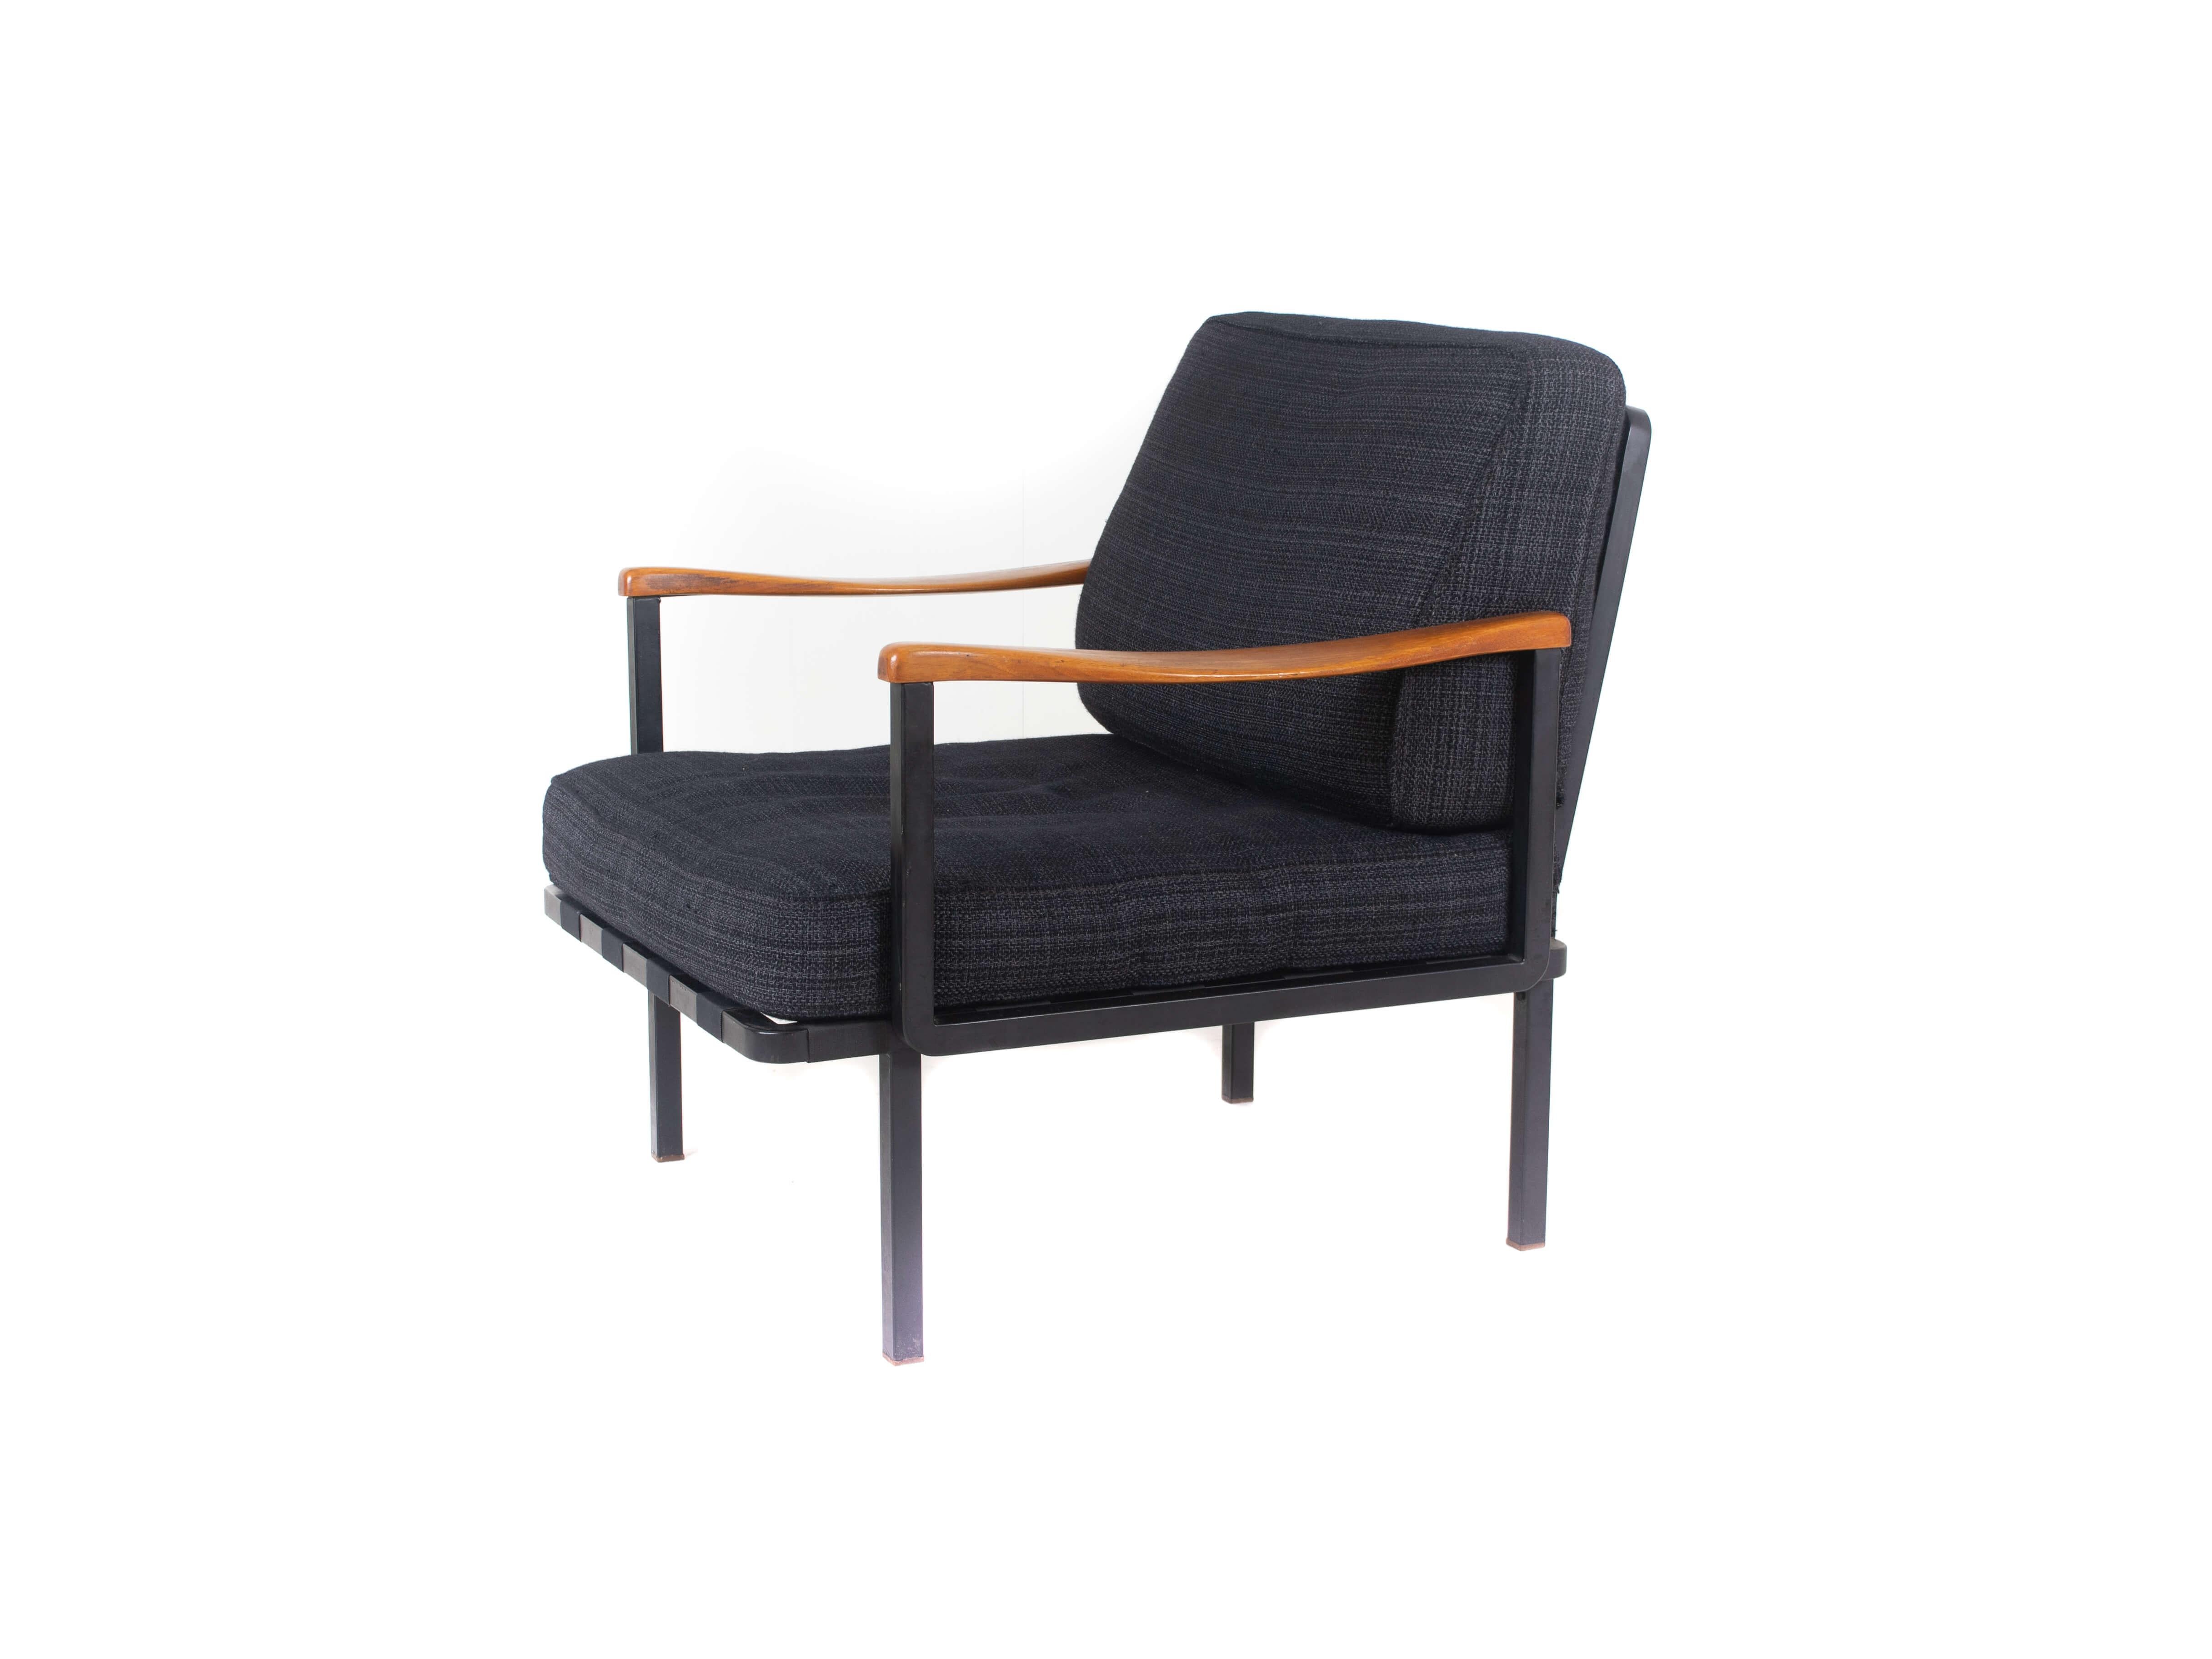 Beeindruckender italienischer moderner Osvaldo Borsani Sessel Modell P24 von Tecno aus Italien 1961. Armlehnen aus Holz in Kombination mit dem Metallgestell machen ihn zu einem interessanten und zeitlosen Möbelstück. Kaum zu glauben, dass dieser